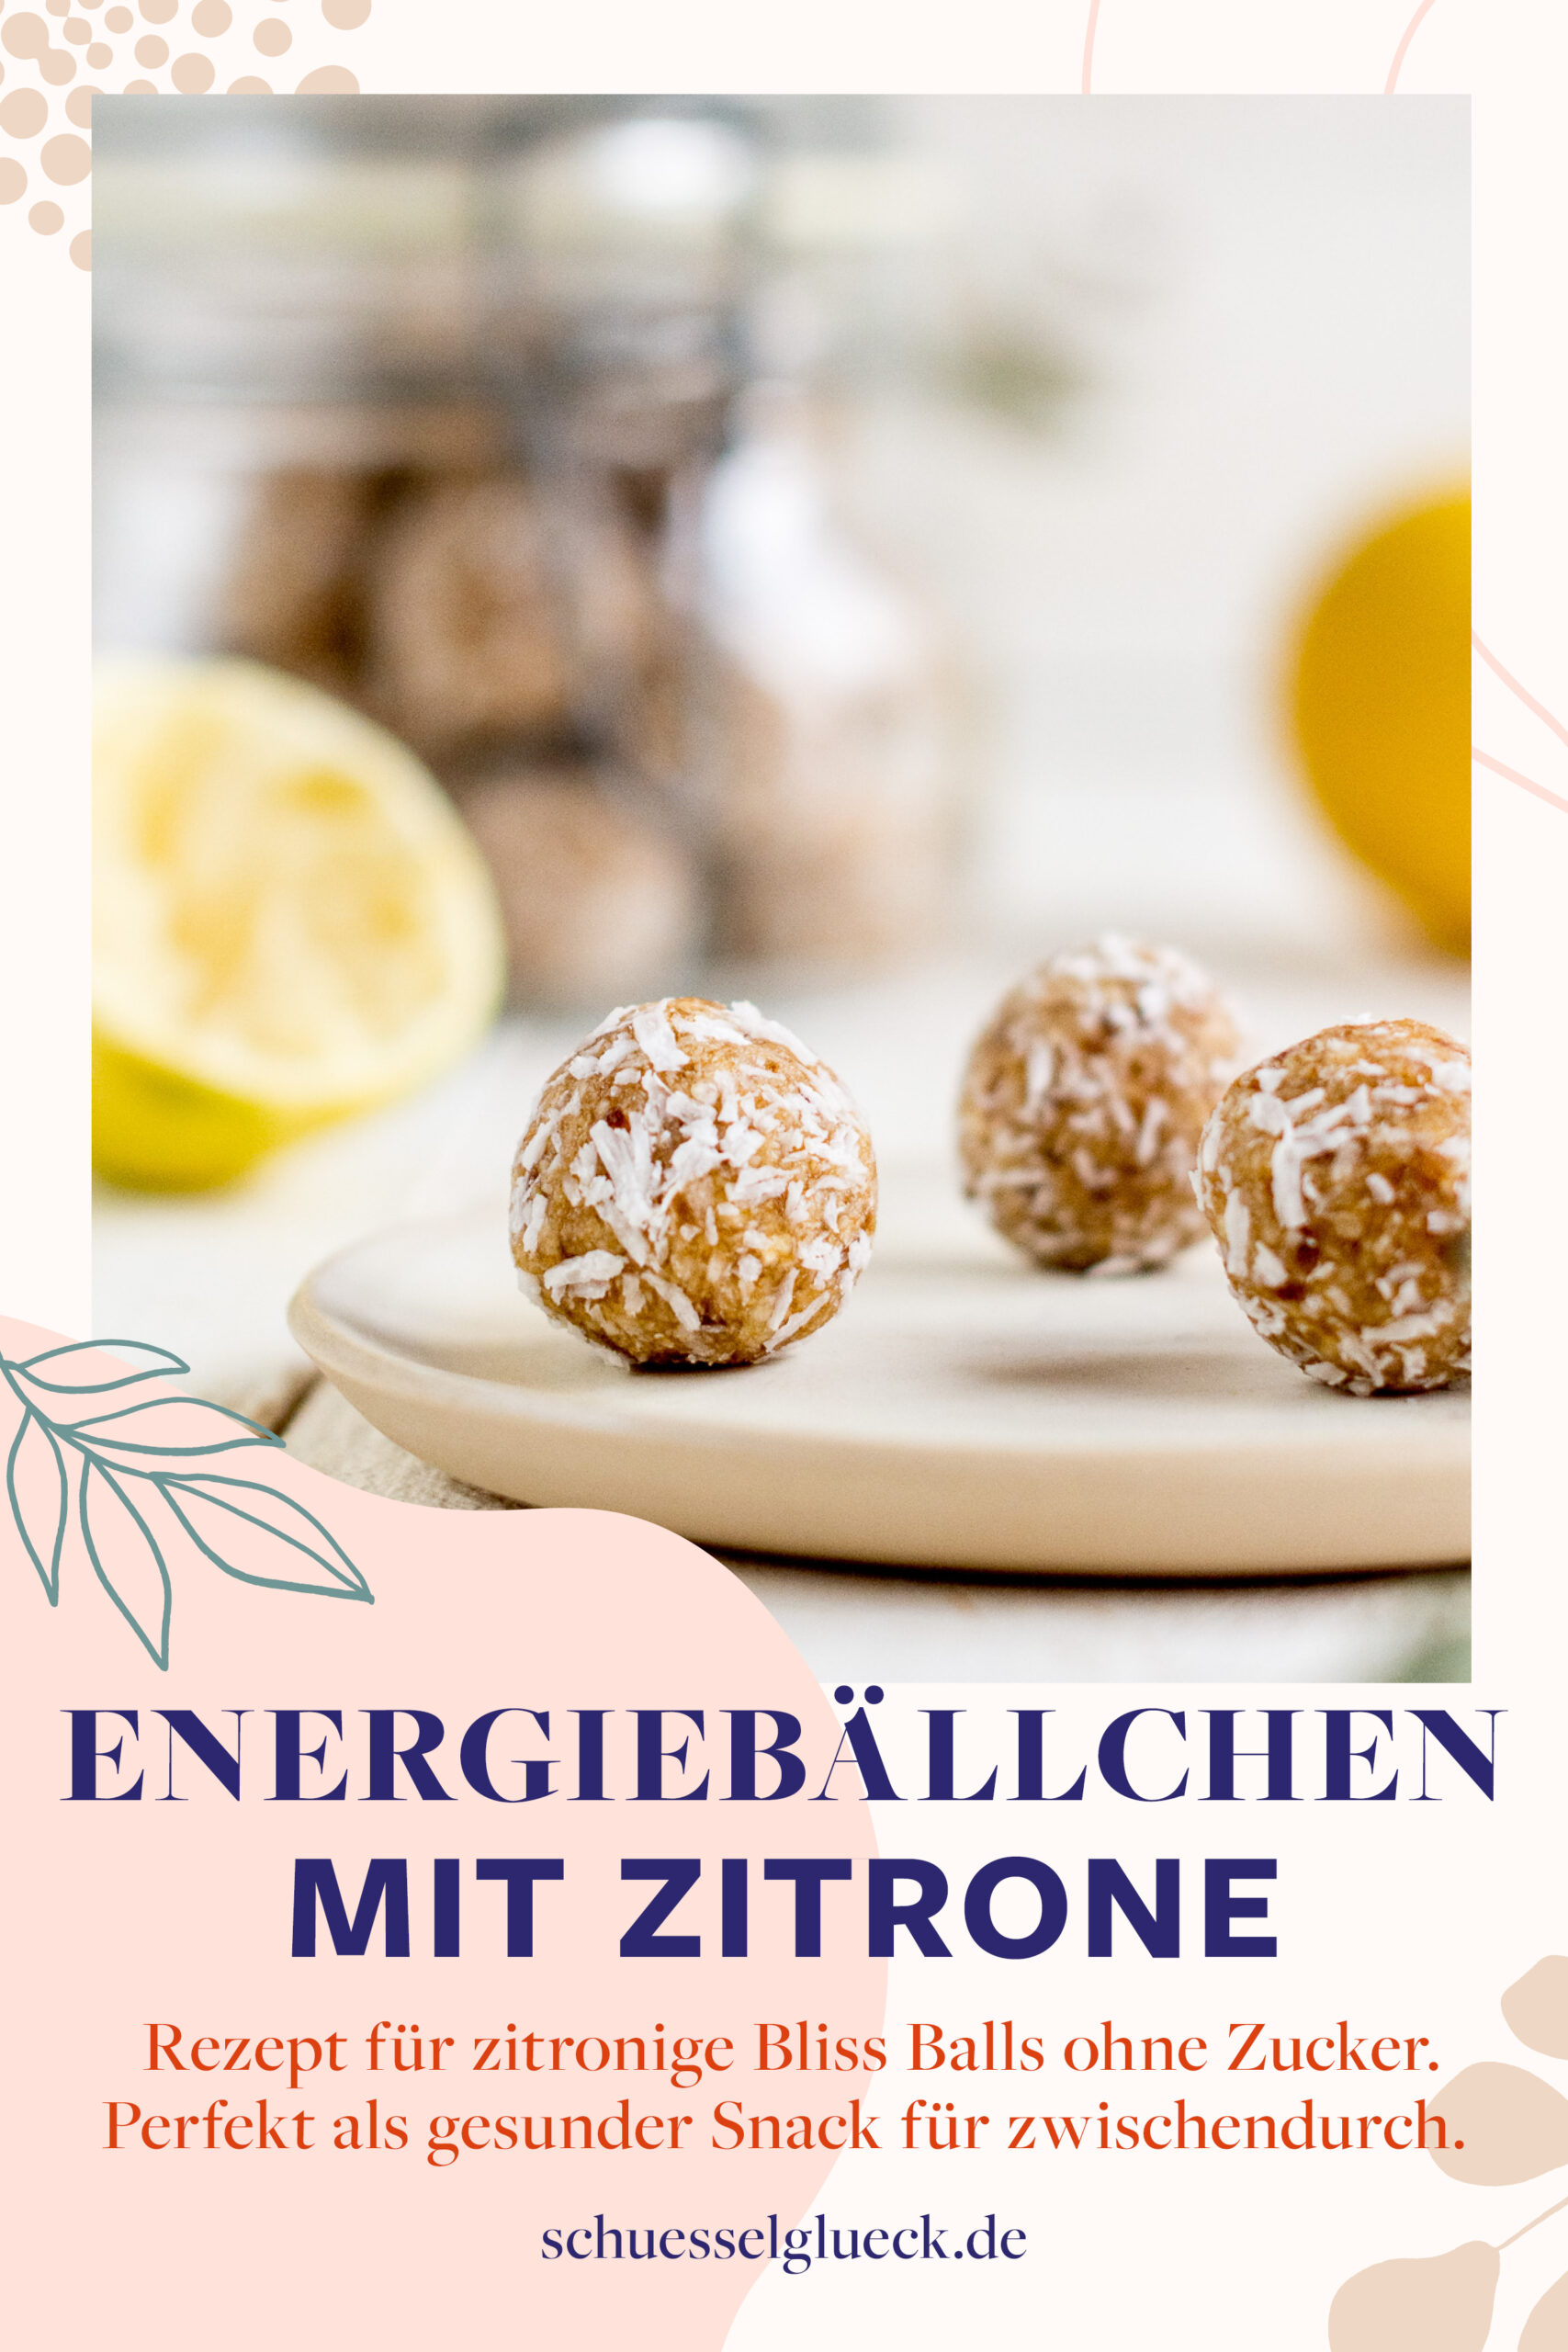 Zitronige Bliss Balls: erfrischende, vegane Energiebällchen mit Kokos